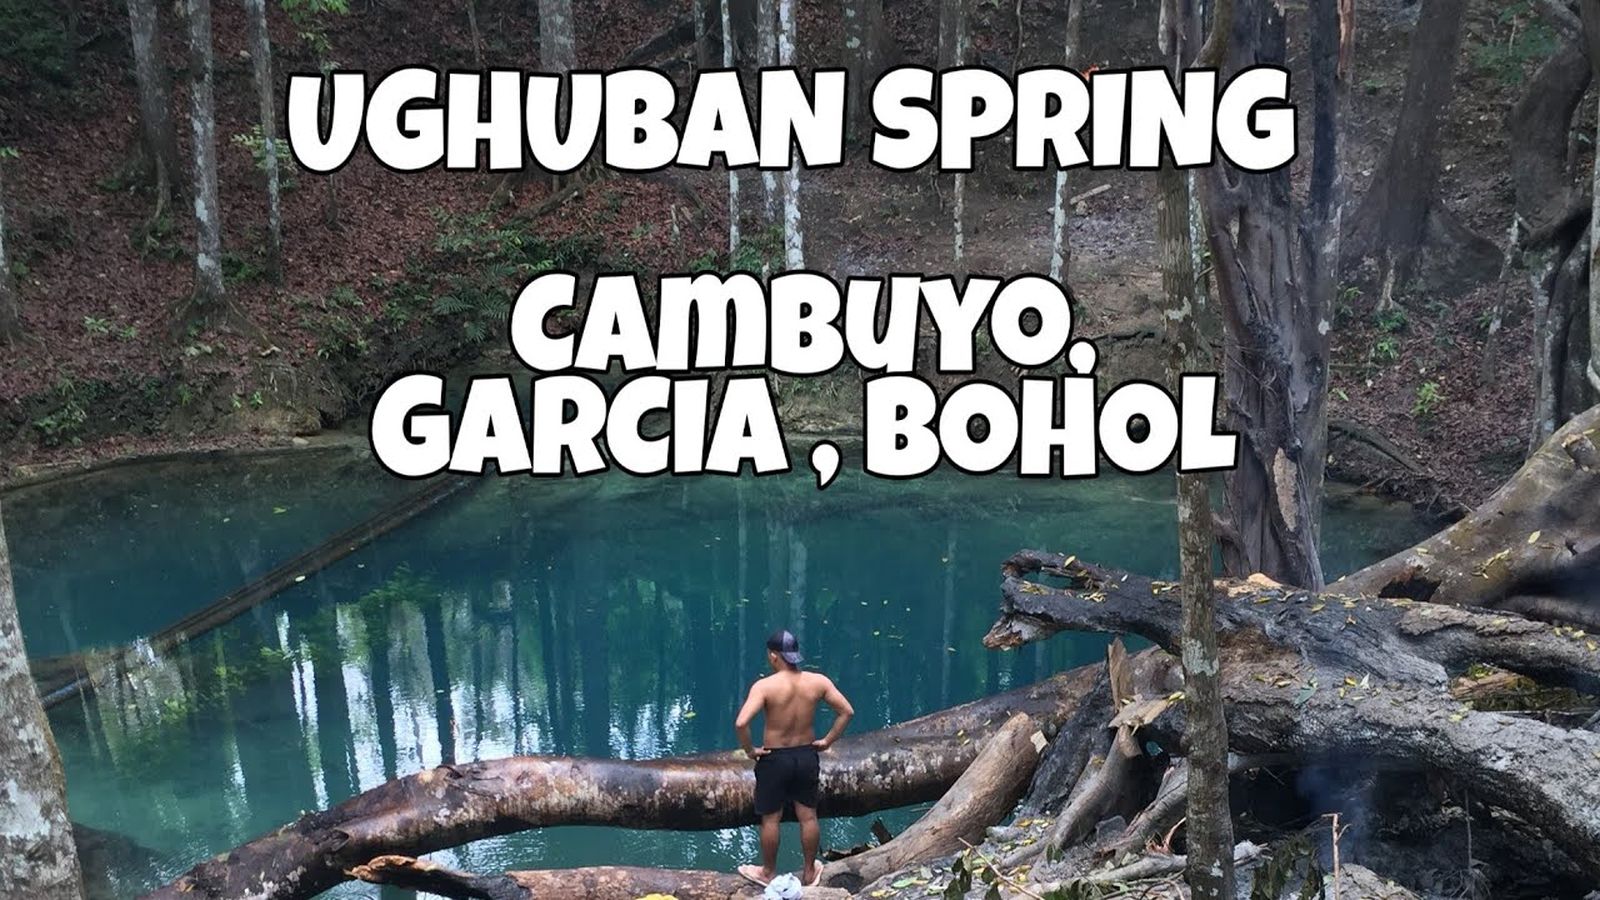 PHILIPPINEN REISEN - ORTE - BOHOL - Touristische Ortsbeschreibung für Carcia-Hernandez 